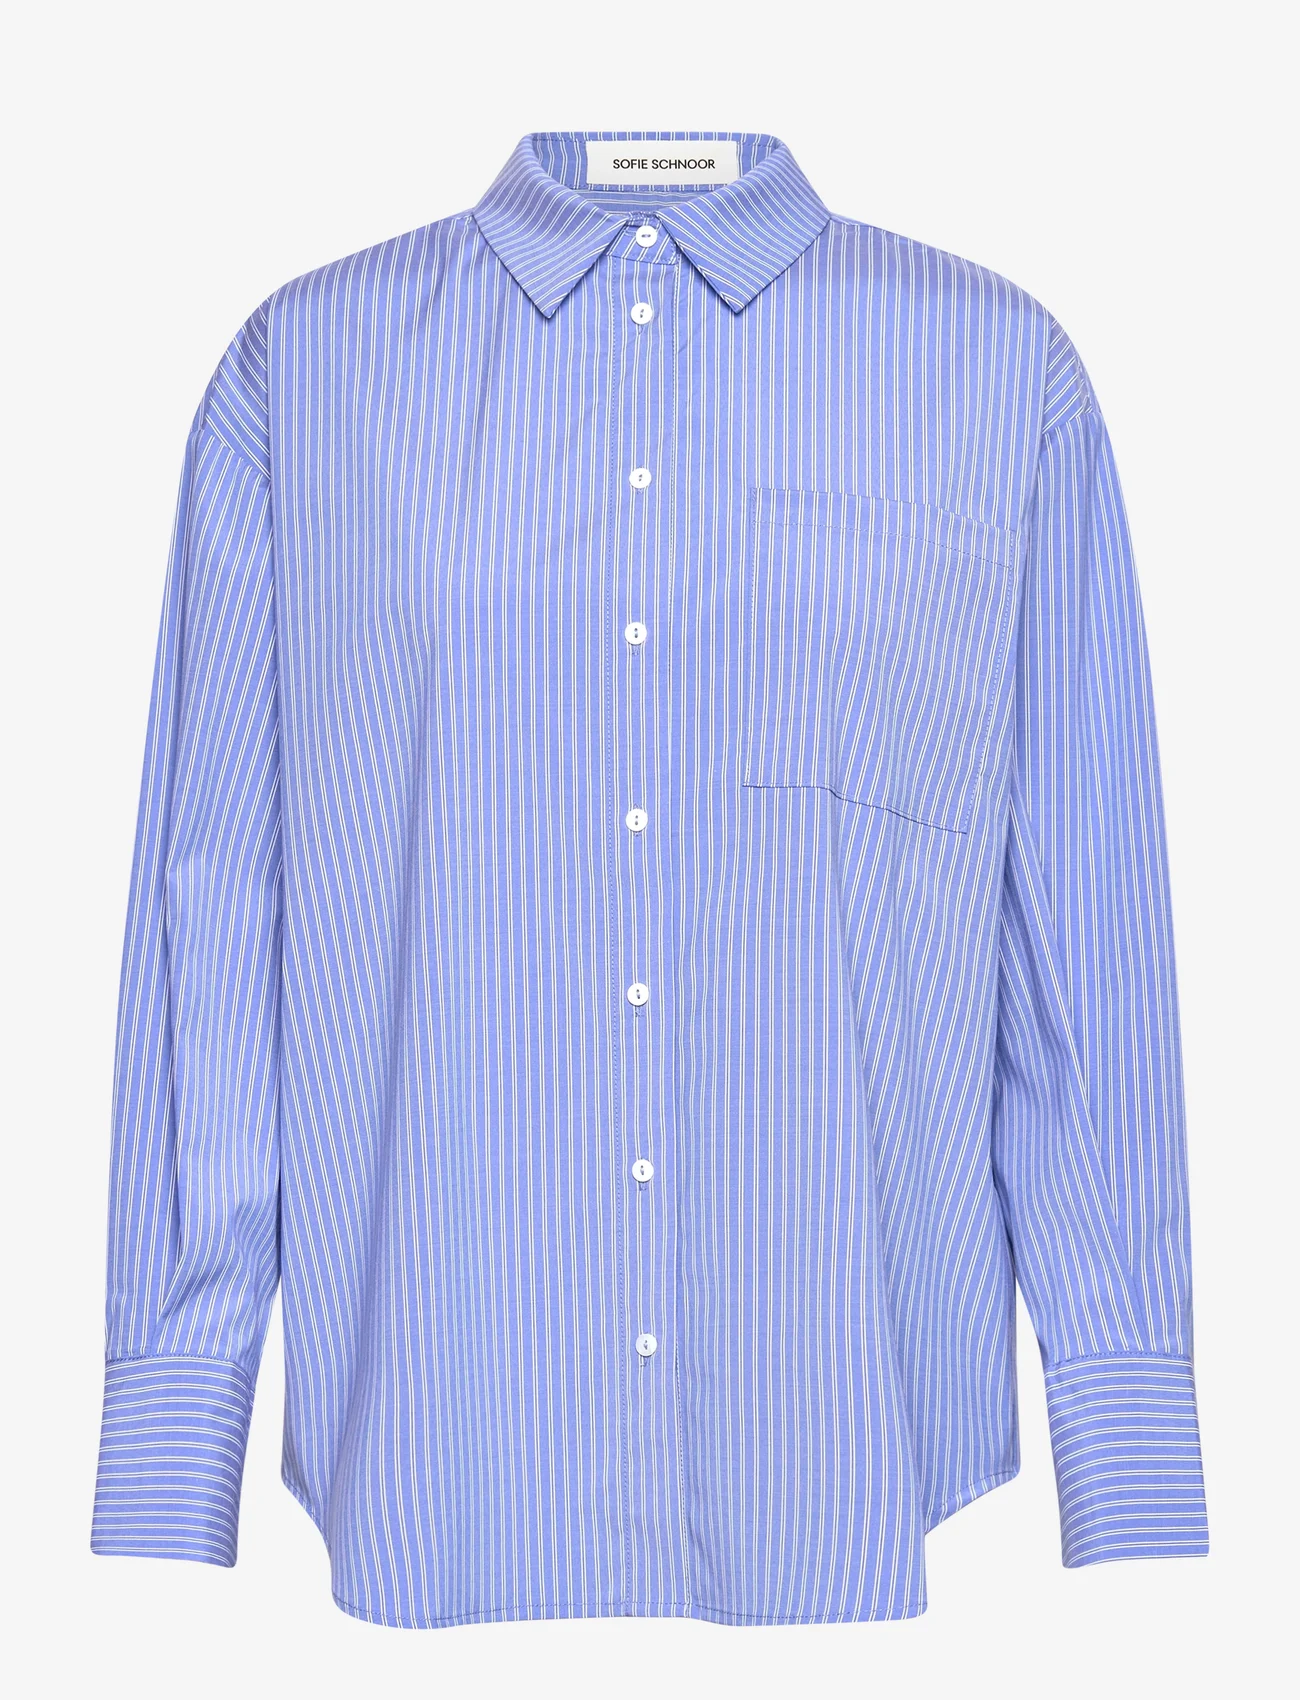 Sofie Schnoor - Shirt - langermede skjorter - blue striped - 0